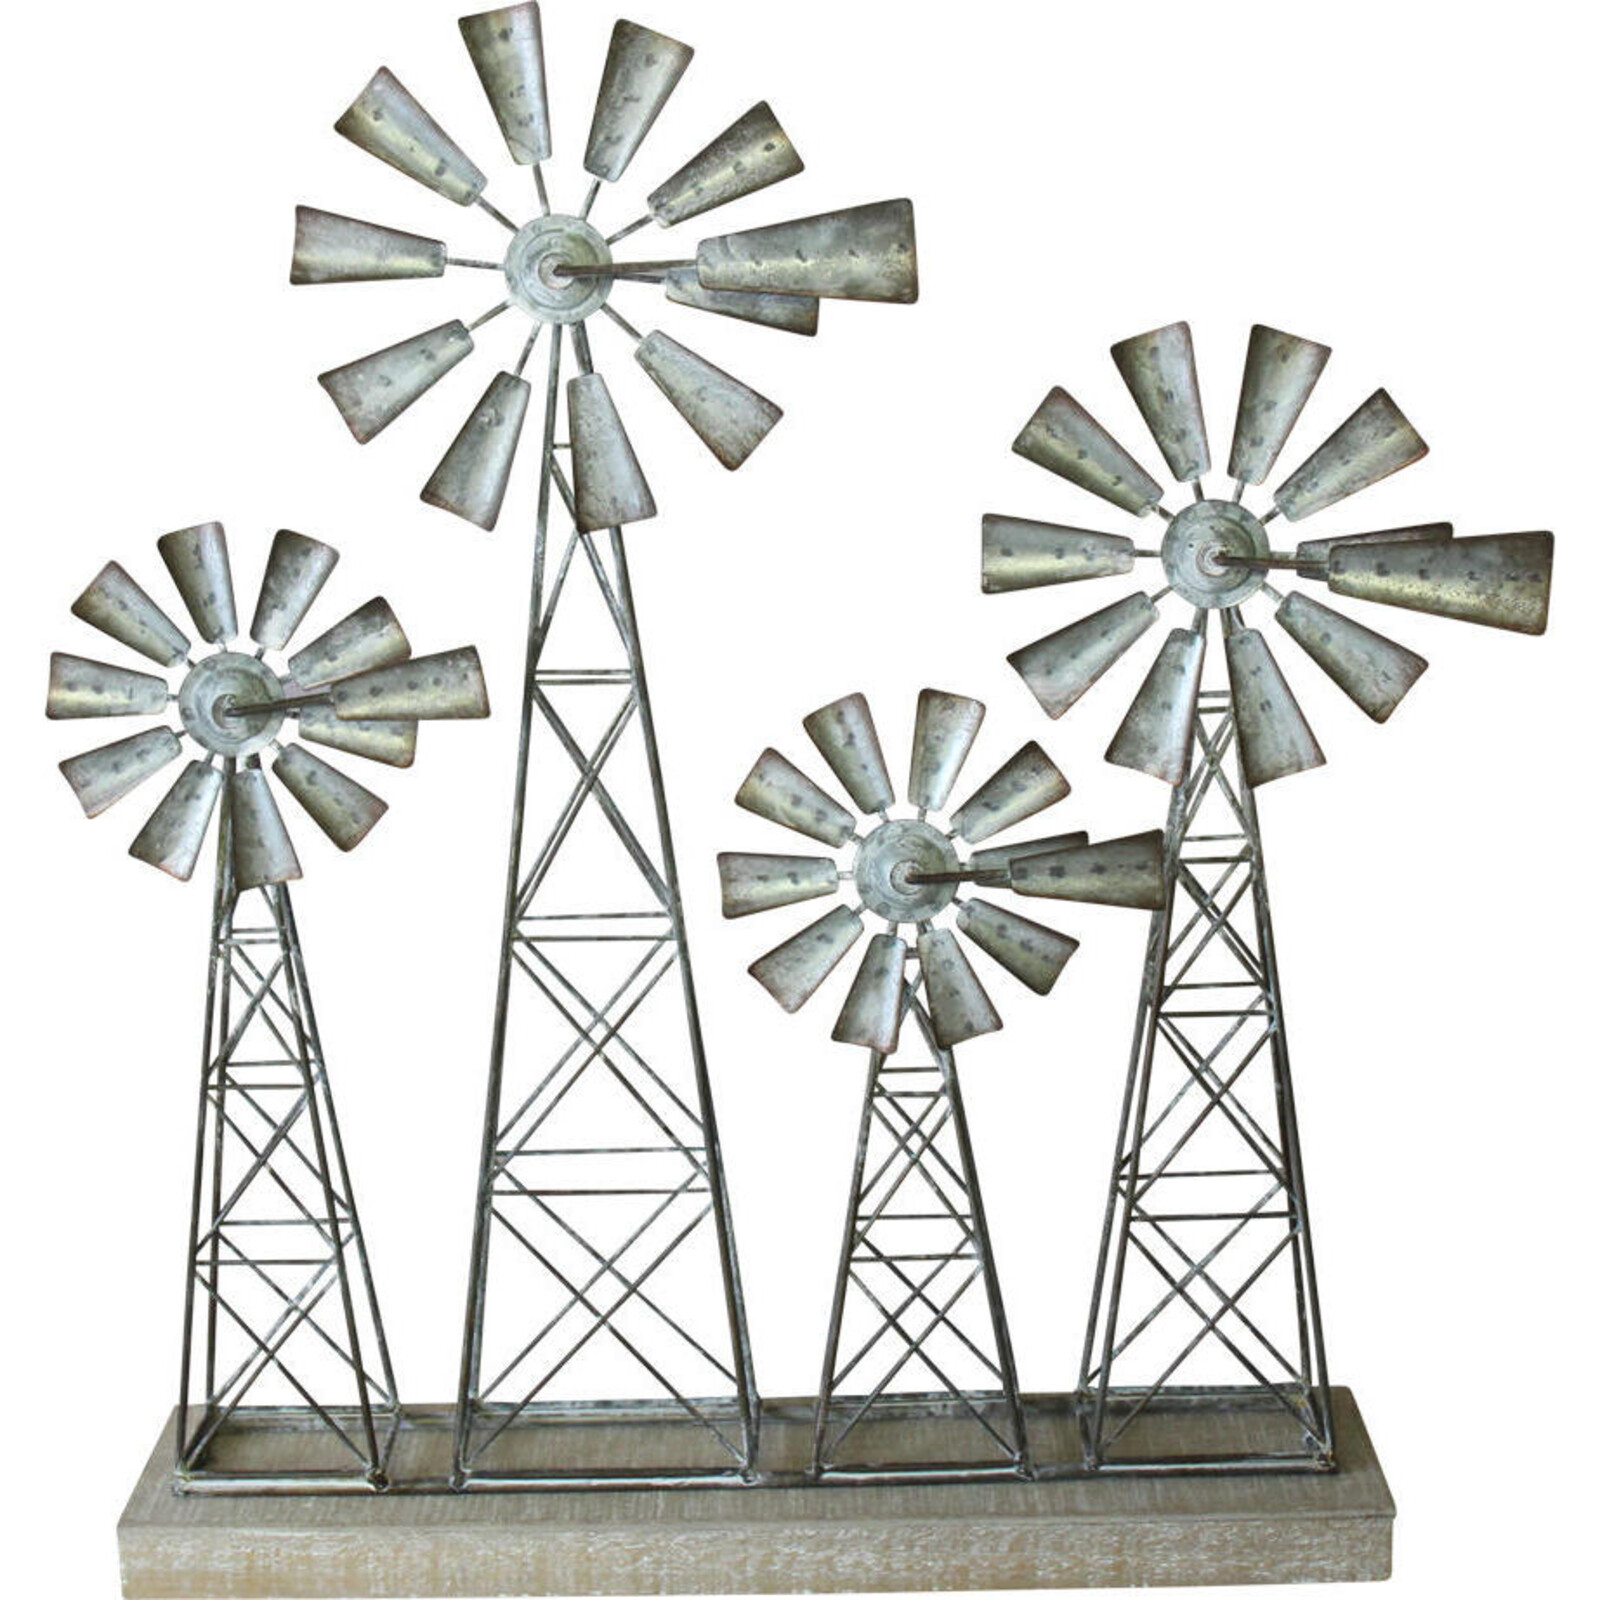 Standing Windmill Farm